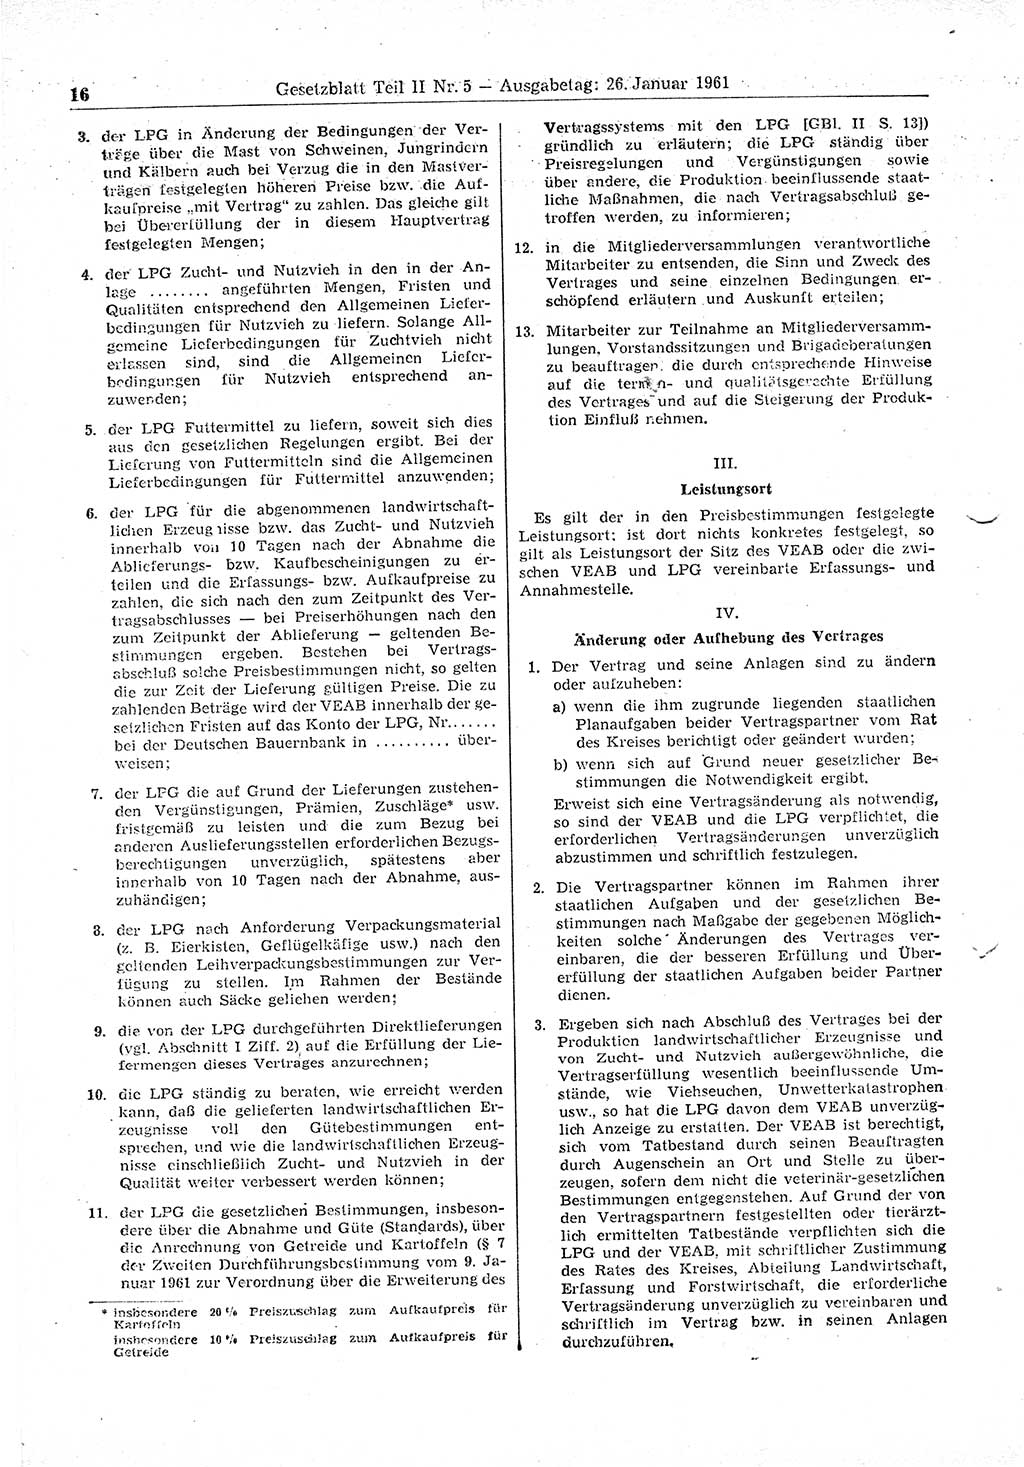 Gesetzblatt (GBl.) der Deutschen Demokratischen Republik (DDR) Teil ⅠⅠ 1961, Seite 16 (GBl. DDR ⅠⅠ 1961, S. 16)